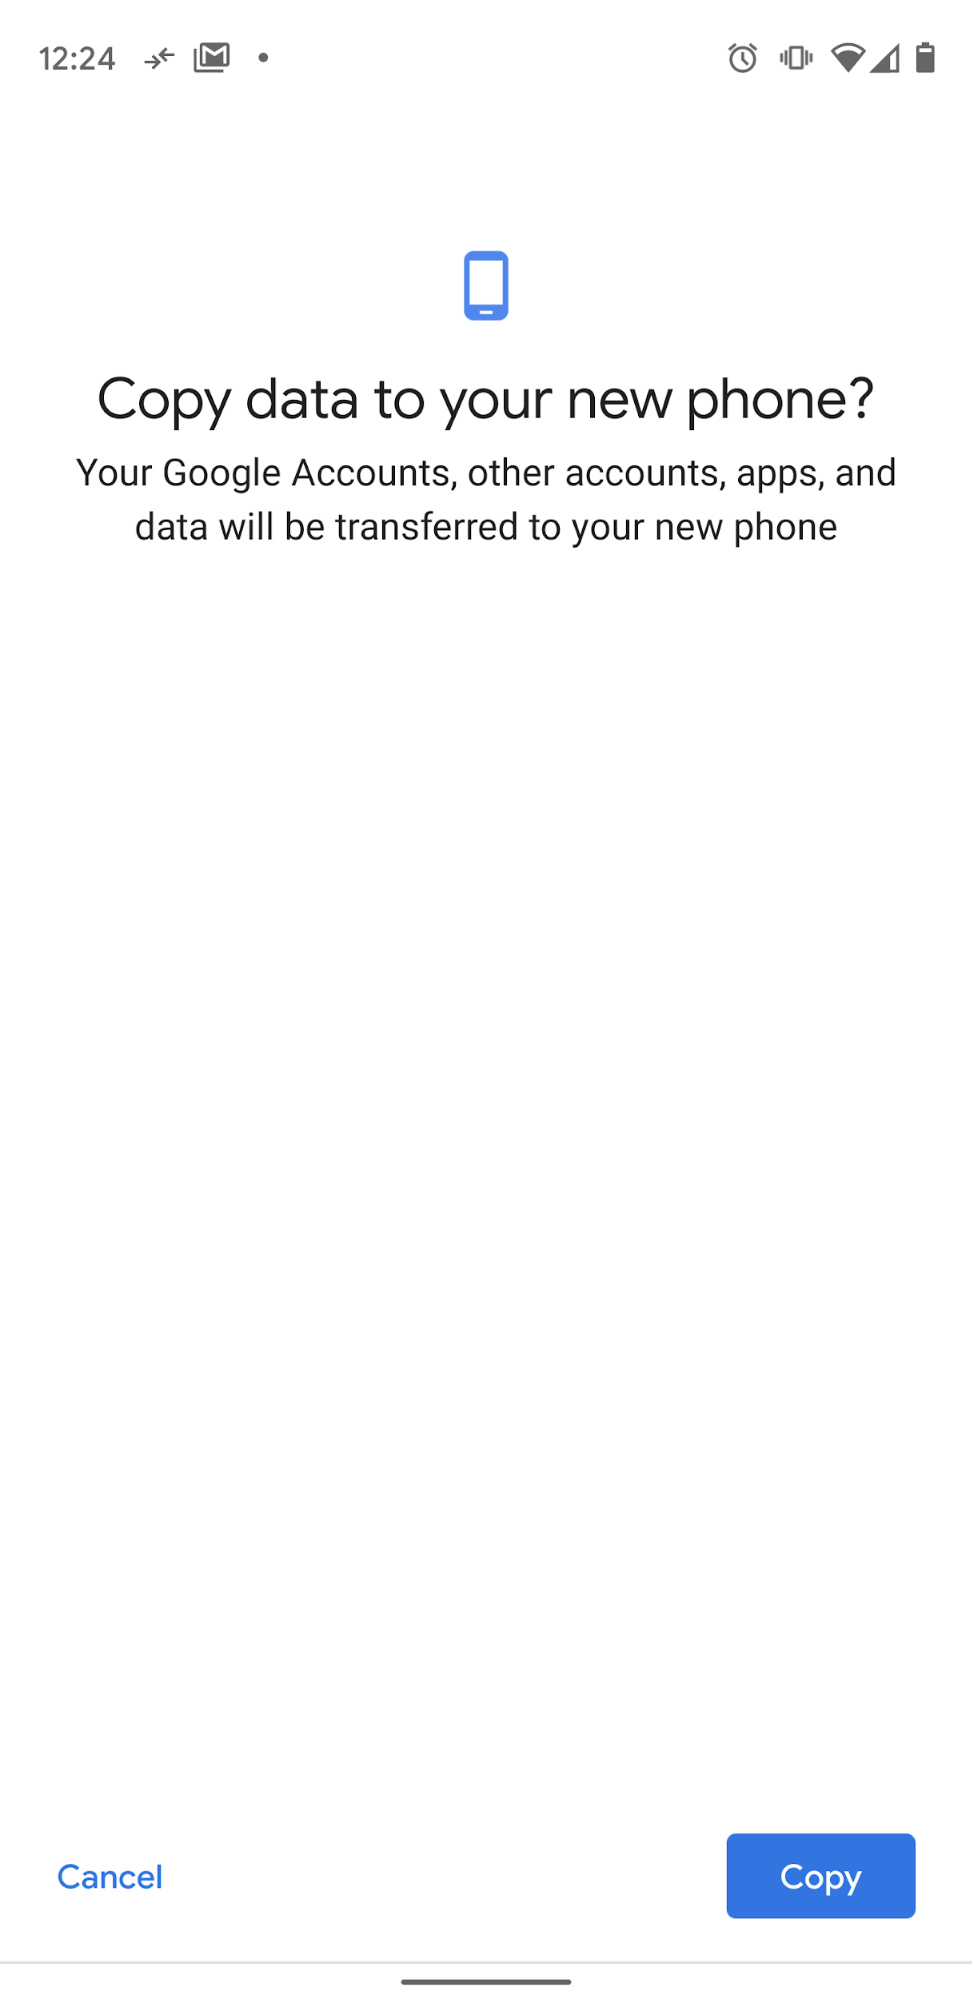 Copie os dados para o novo smartphone.